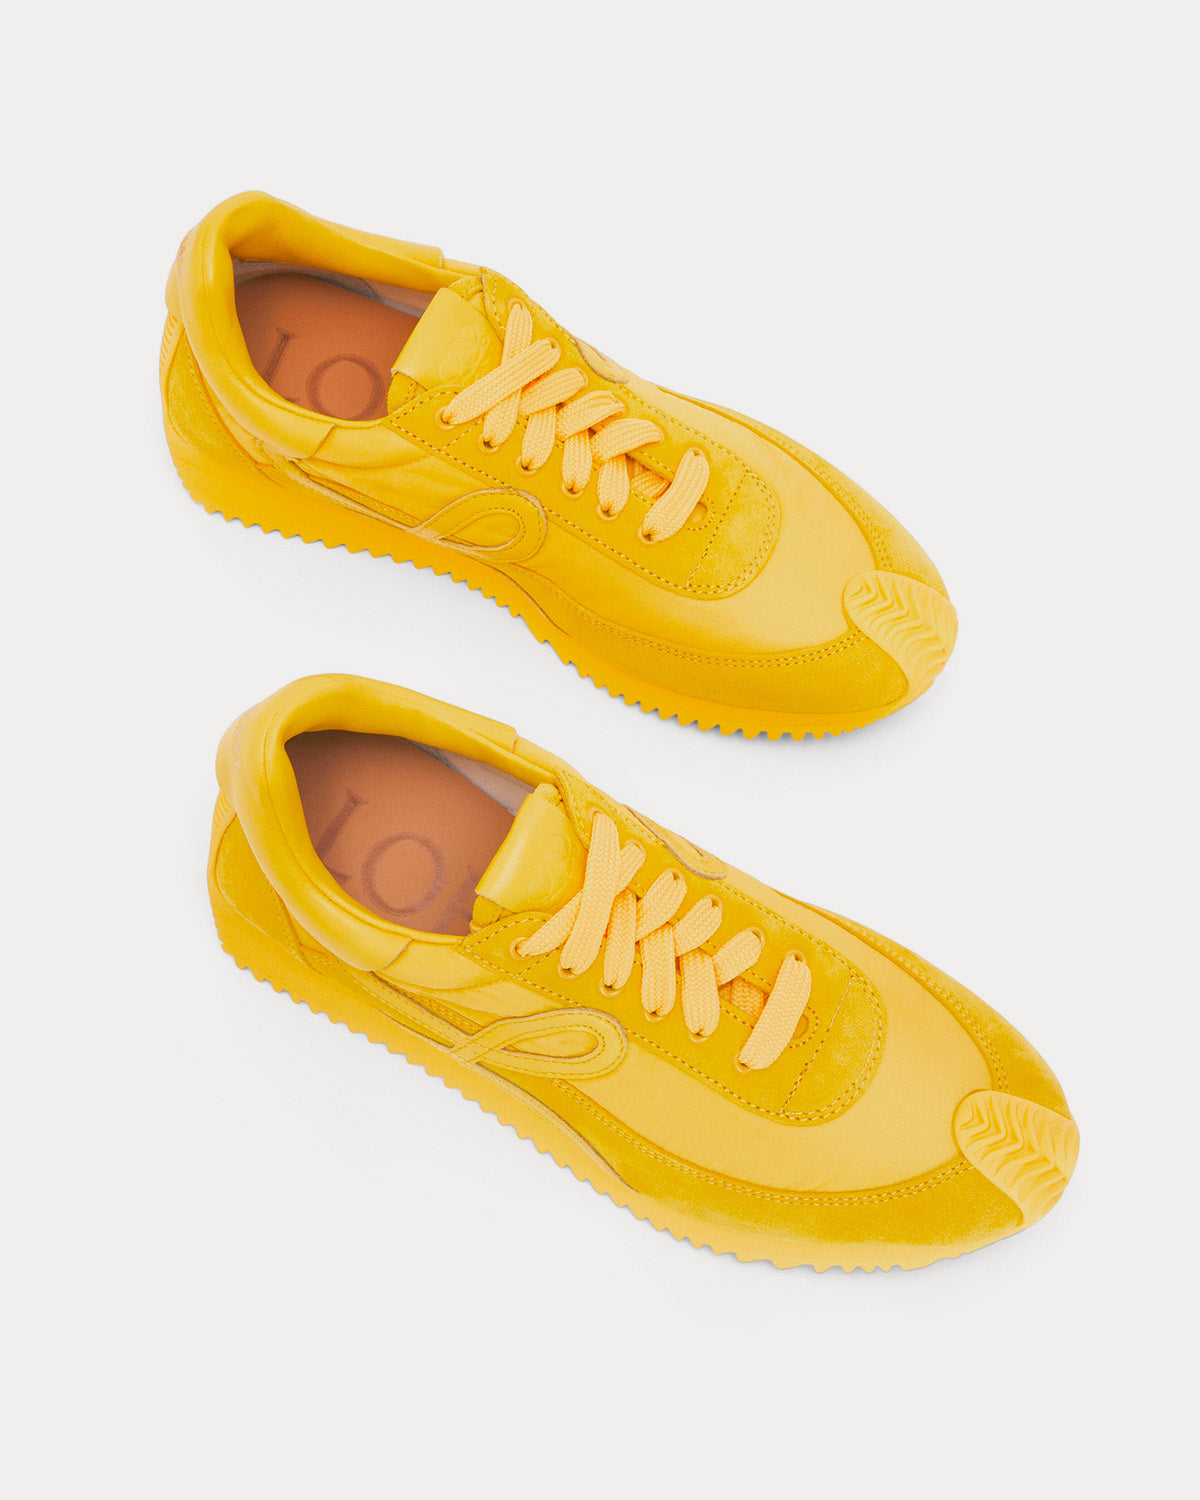 Loewe - Flow Runner in Nylon & Suede Yellow Low Top Sneakers